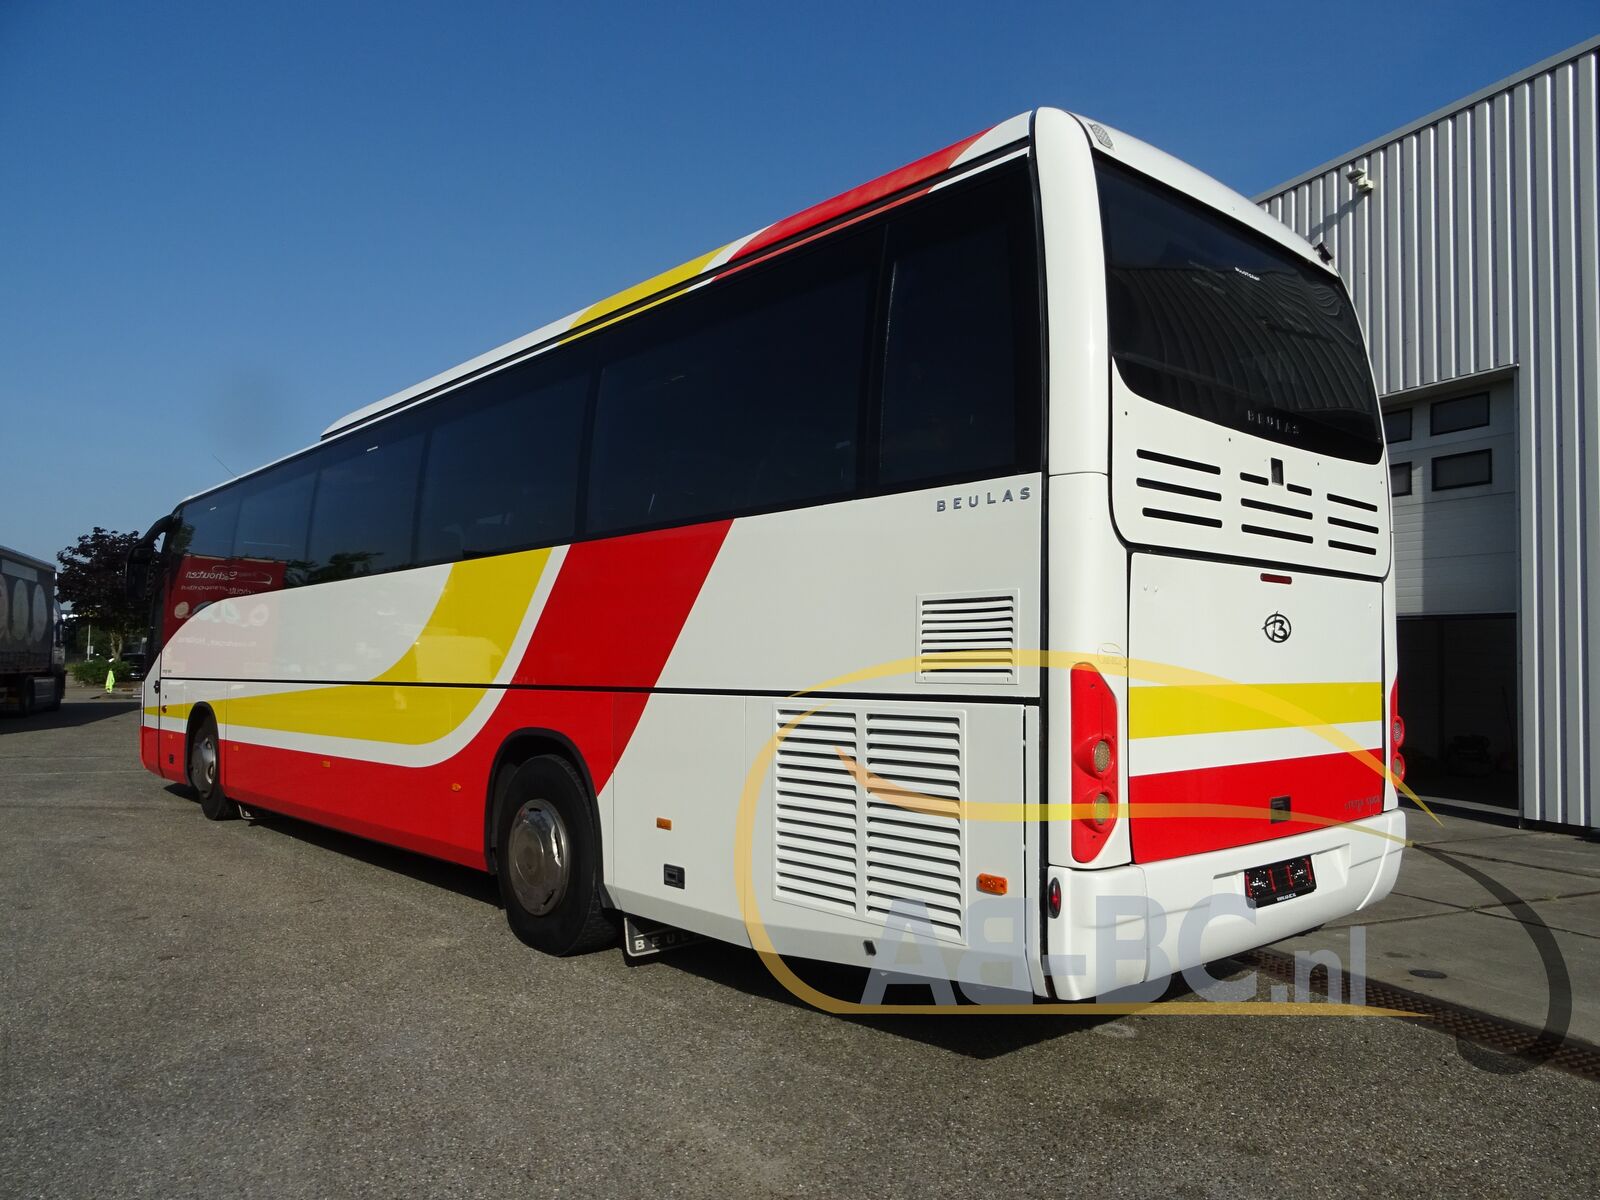 coach-bus-SCANIA-K400-Beulas-52-Seats-Liftbus-EURO-5---1655455375277902642_orig_6e8e7294b7d7b542883b1fdae4844a30--22060715555758532500